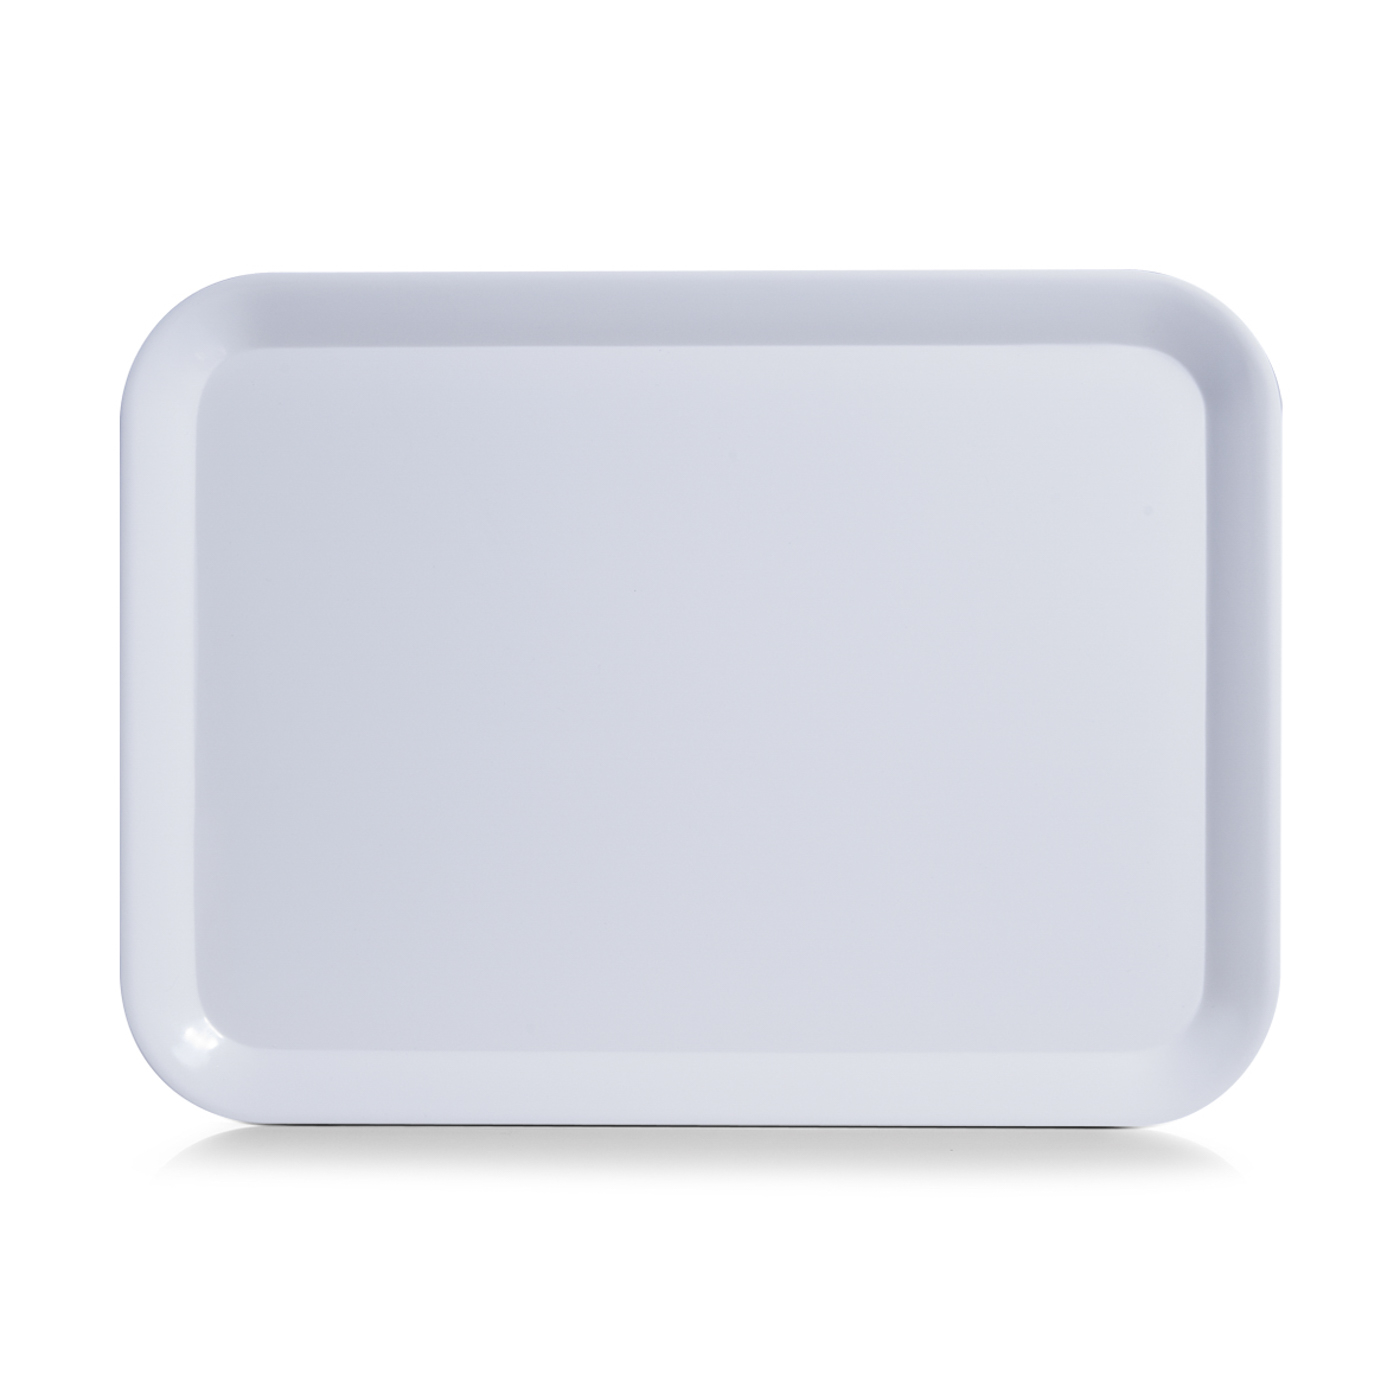 Tablett MISTRAL, Farbe: weiss, Grösse: 43,5 x 32,5 cm,